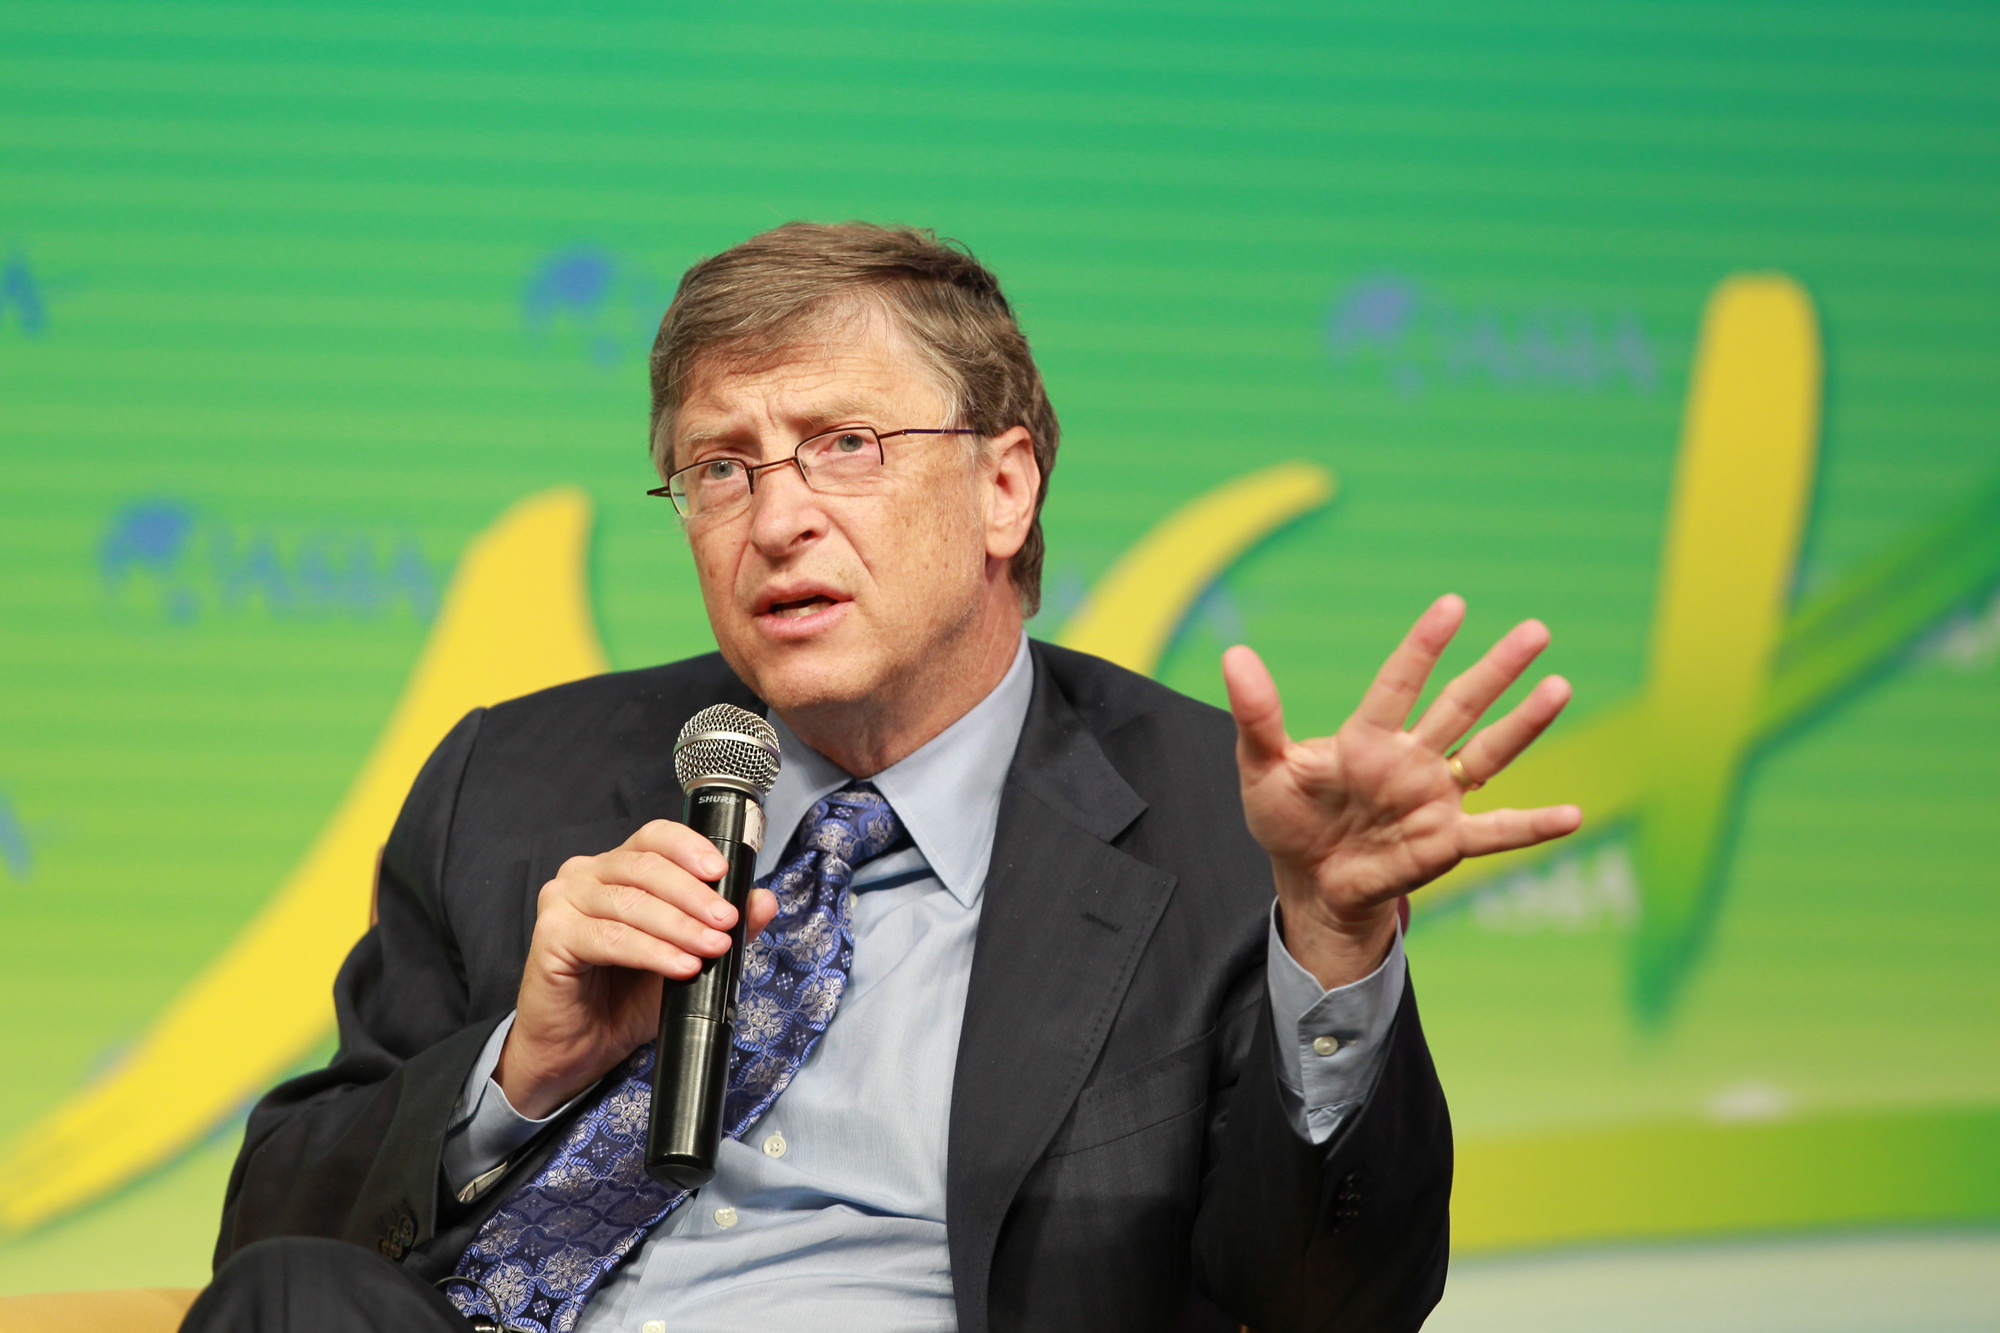 El libro de Bill Gates estará disponible en mayo de 2022.